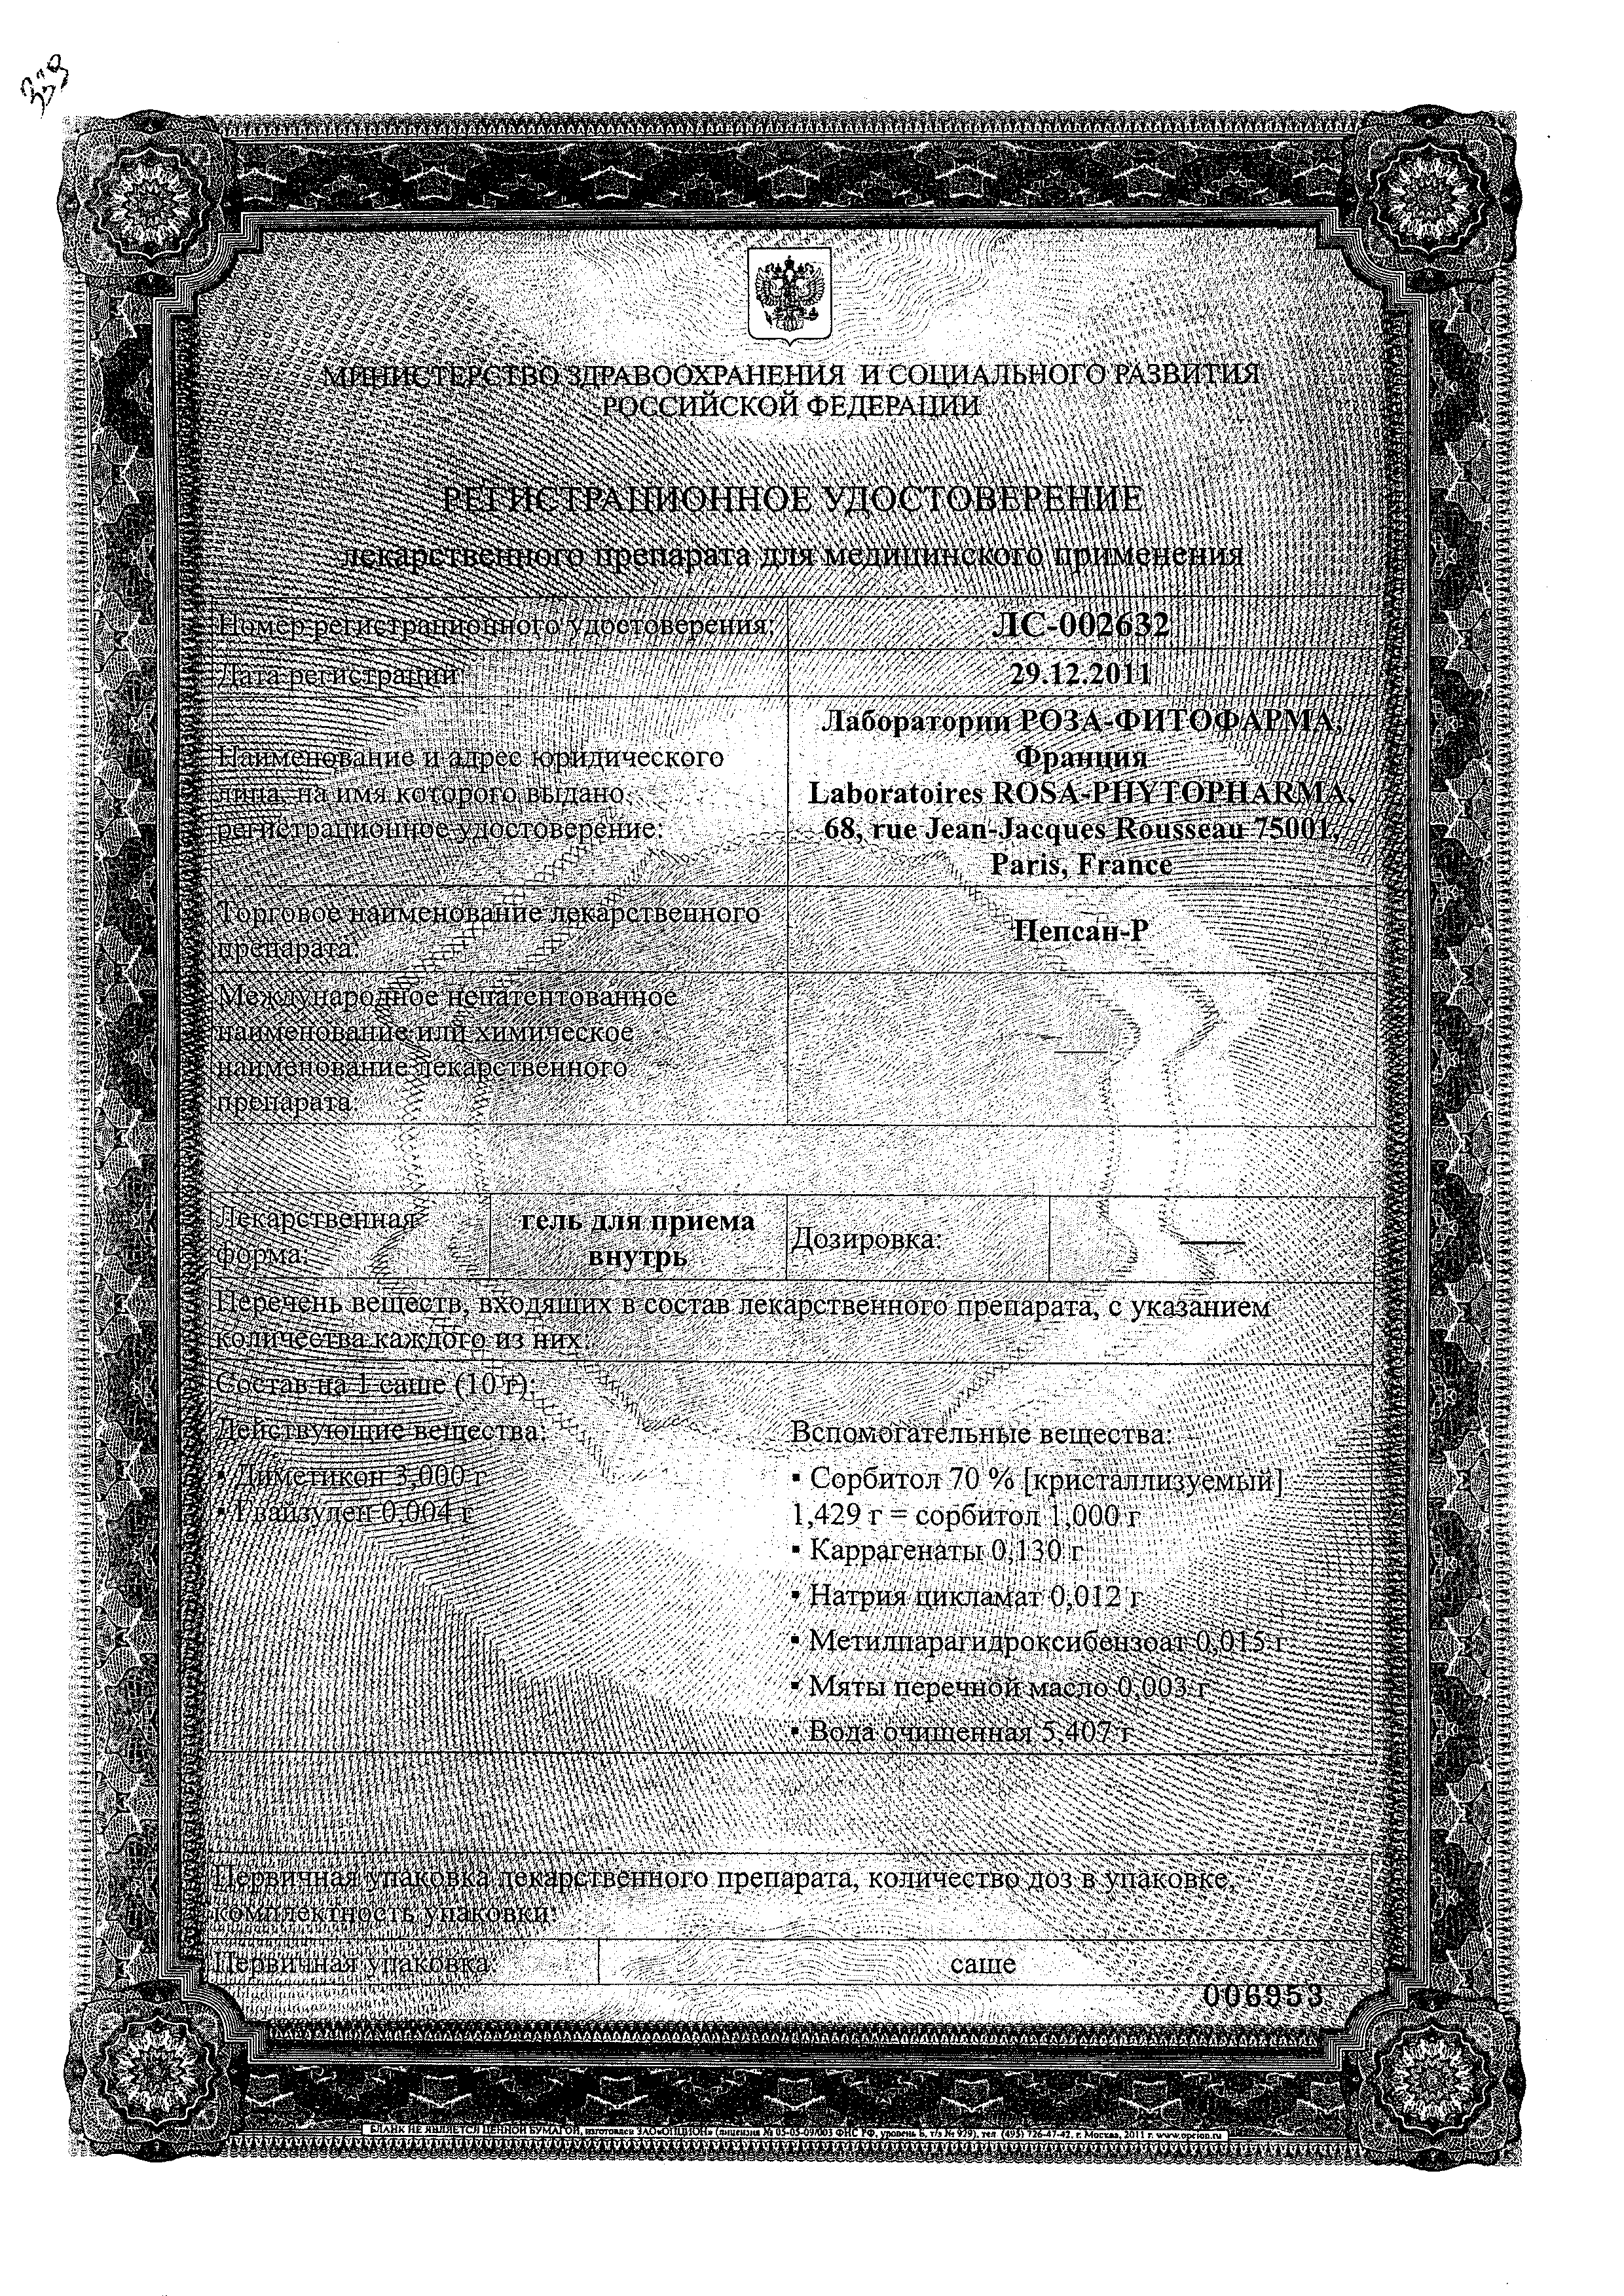 Пепсан-Р сертификат